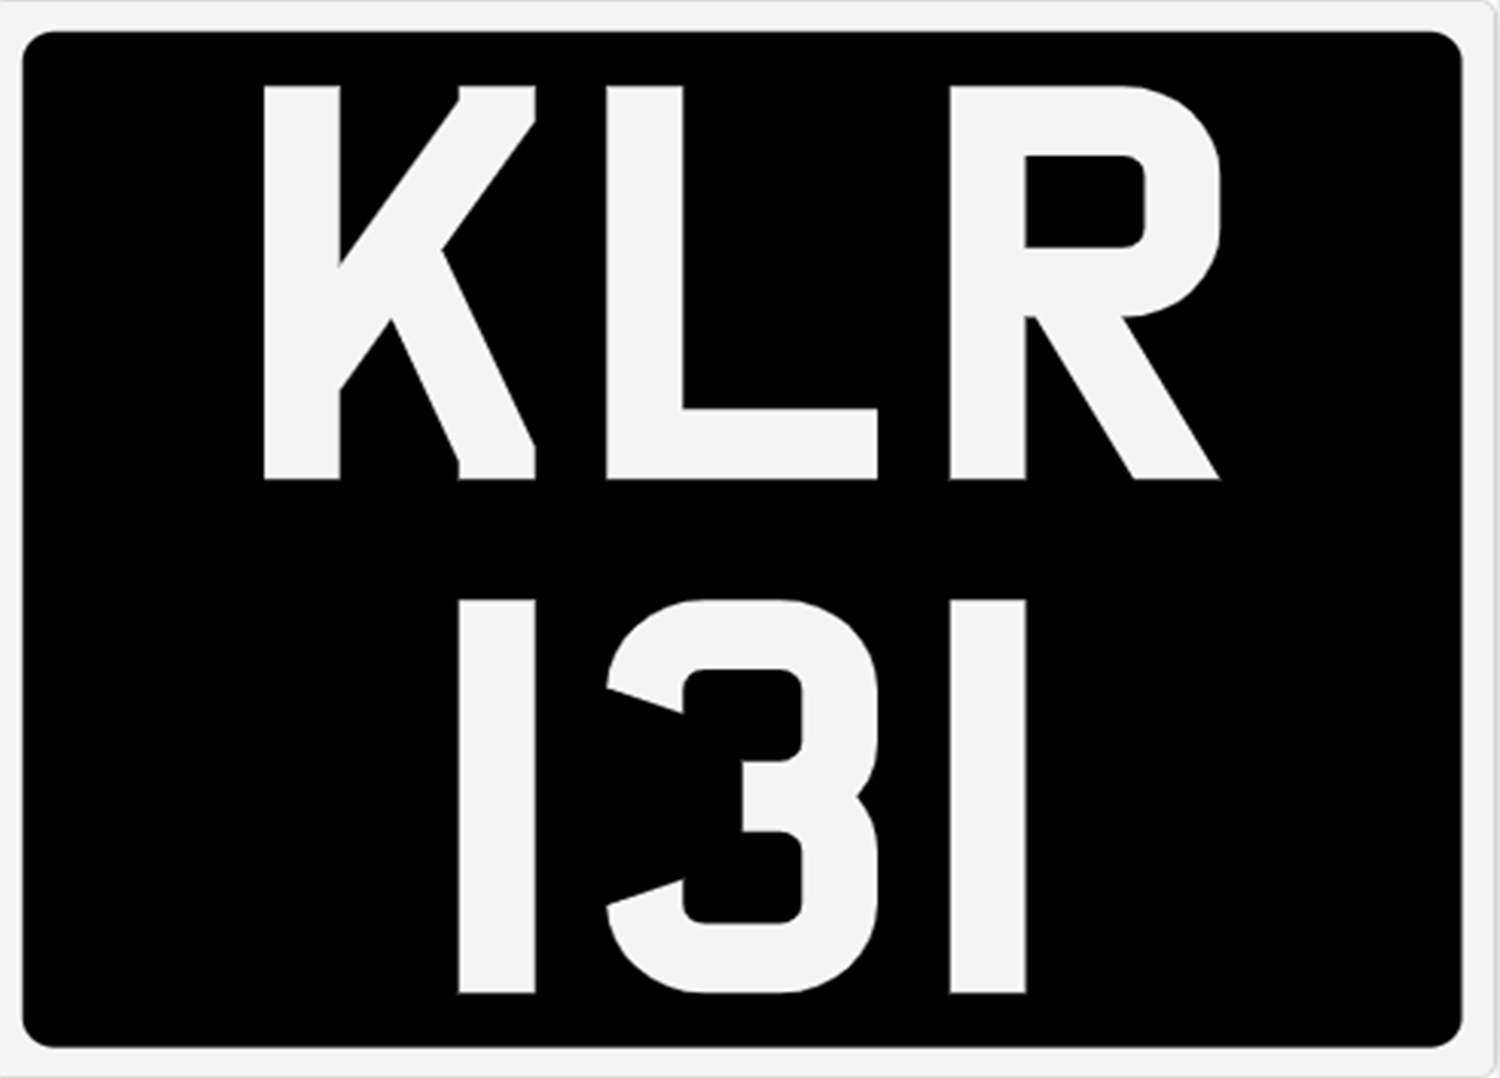 <p>&nbsp; KLR 131 Registration Number</p>